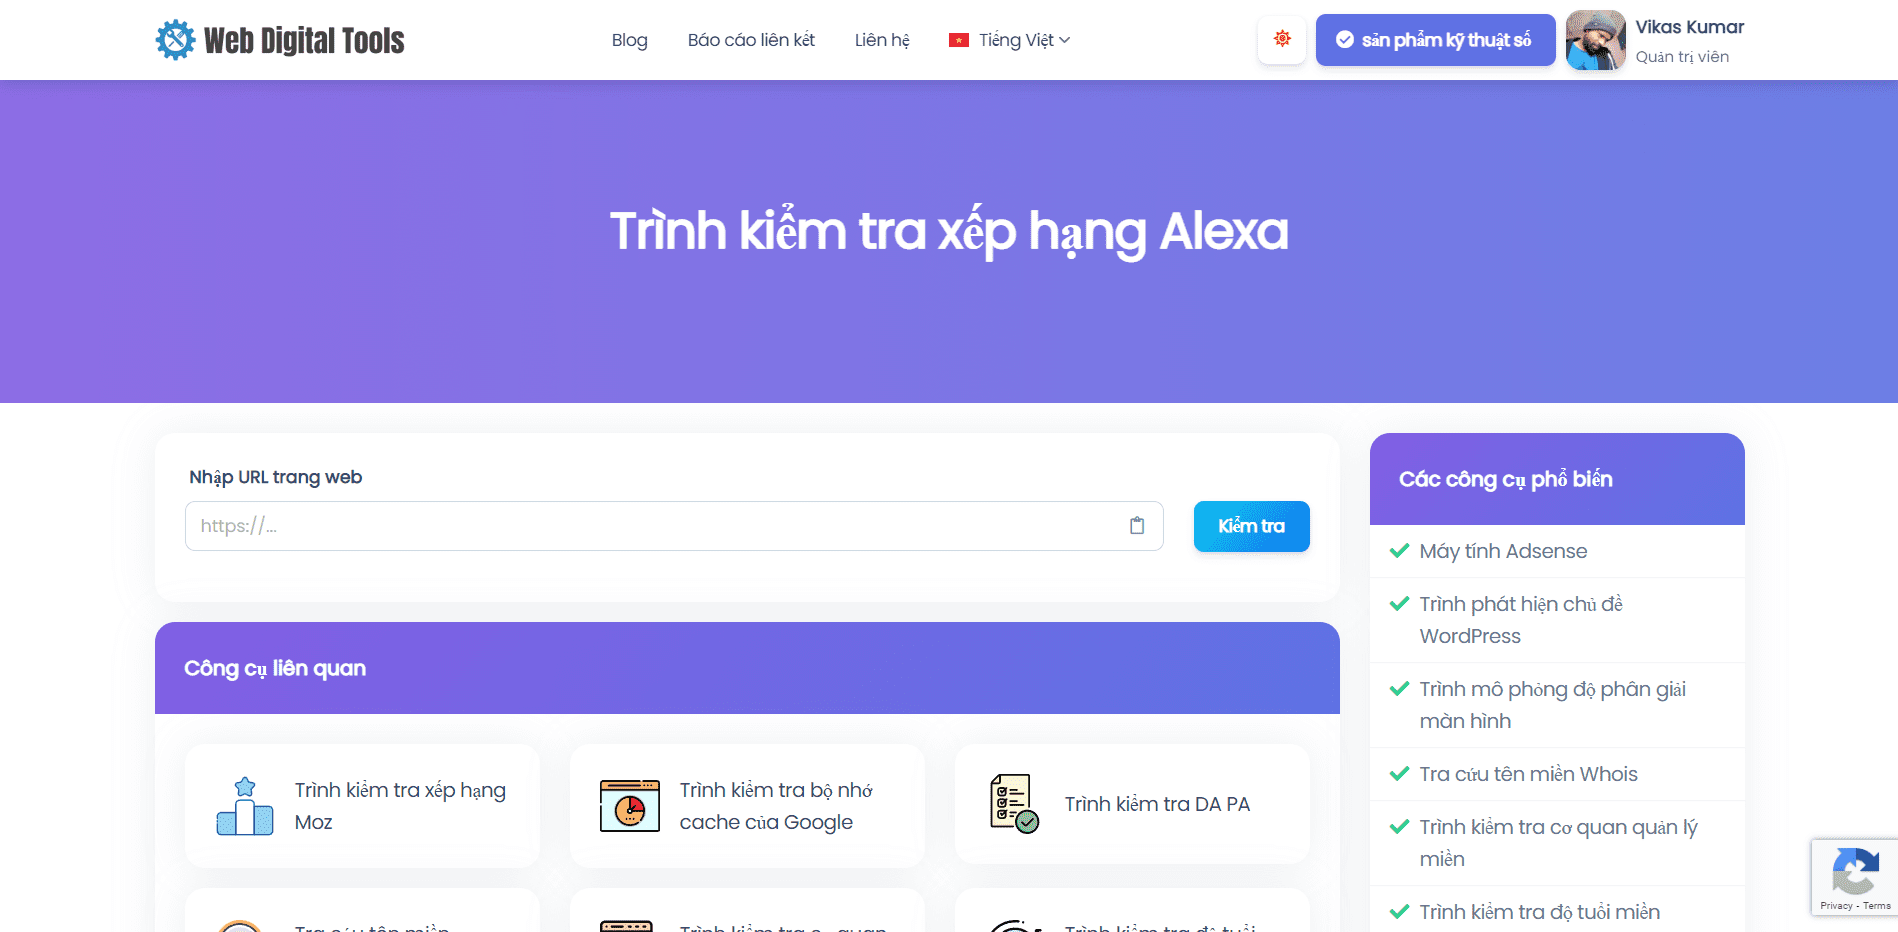 Trình kiểm tra xếp hạng Alexa